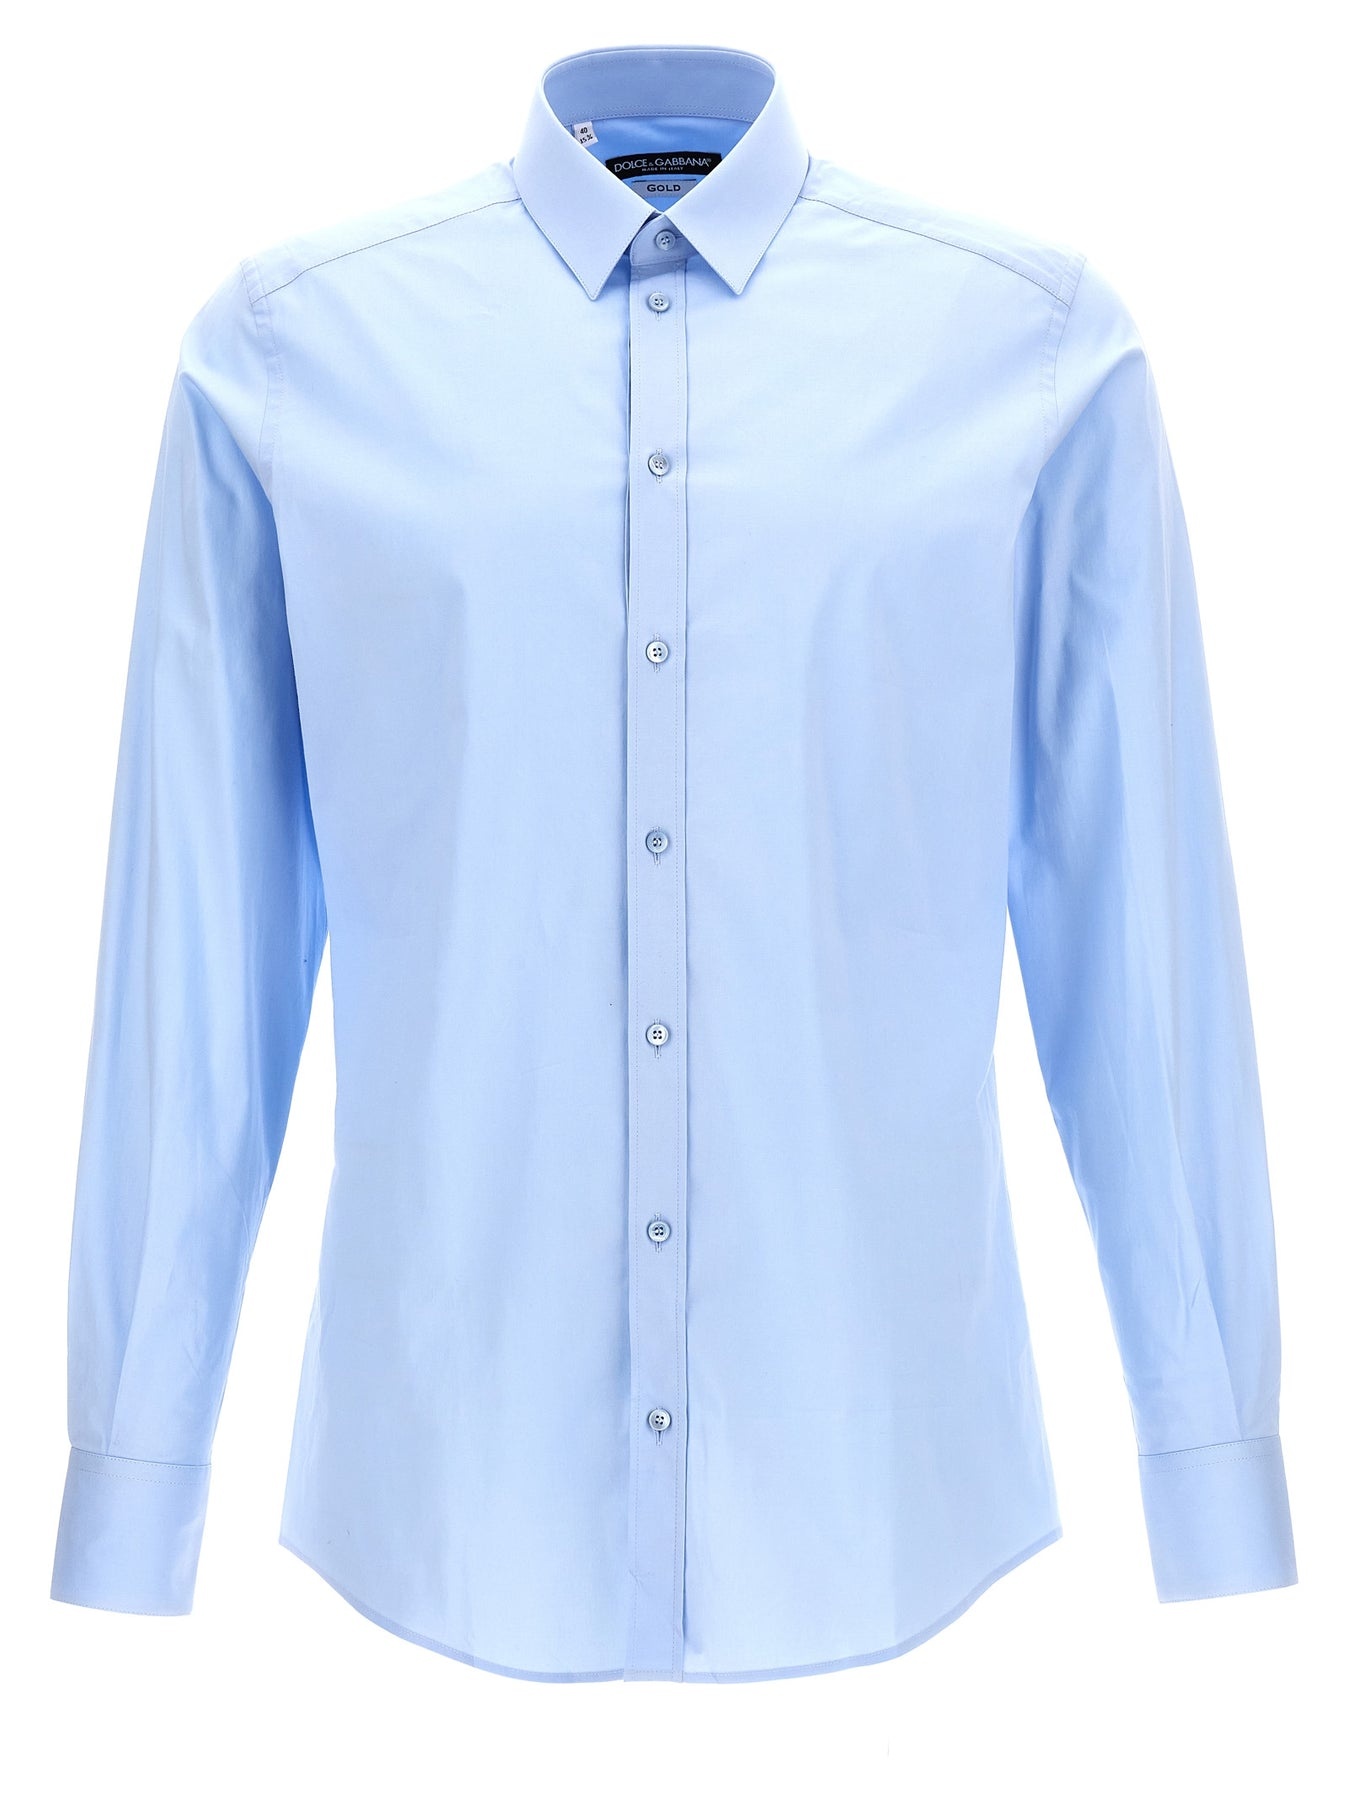 Dg Essential Shirt Shirt, Blouse Light Blue - 1